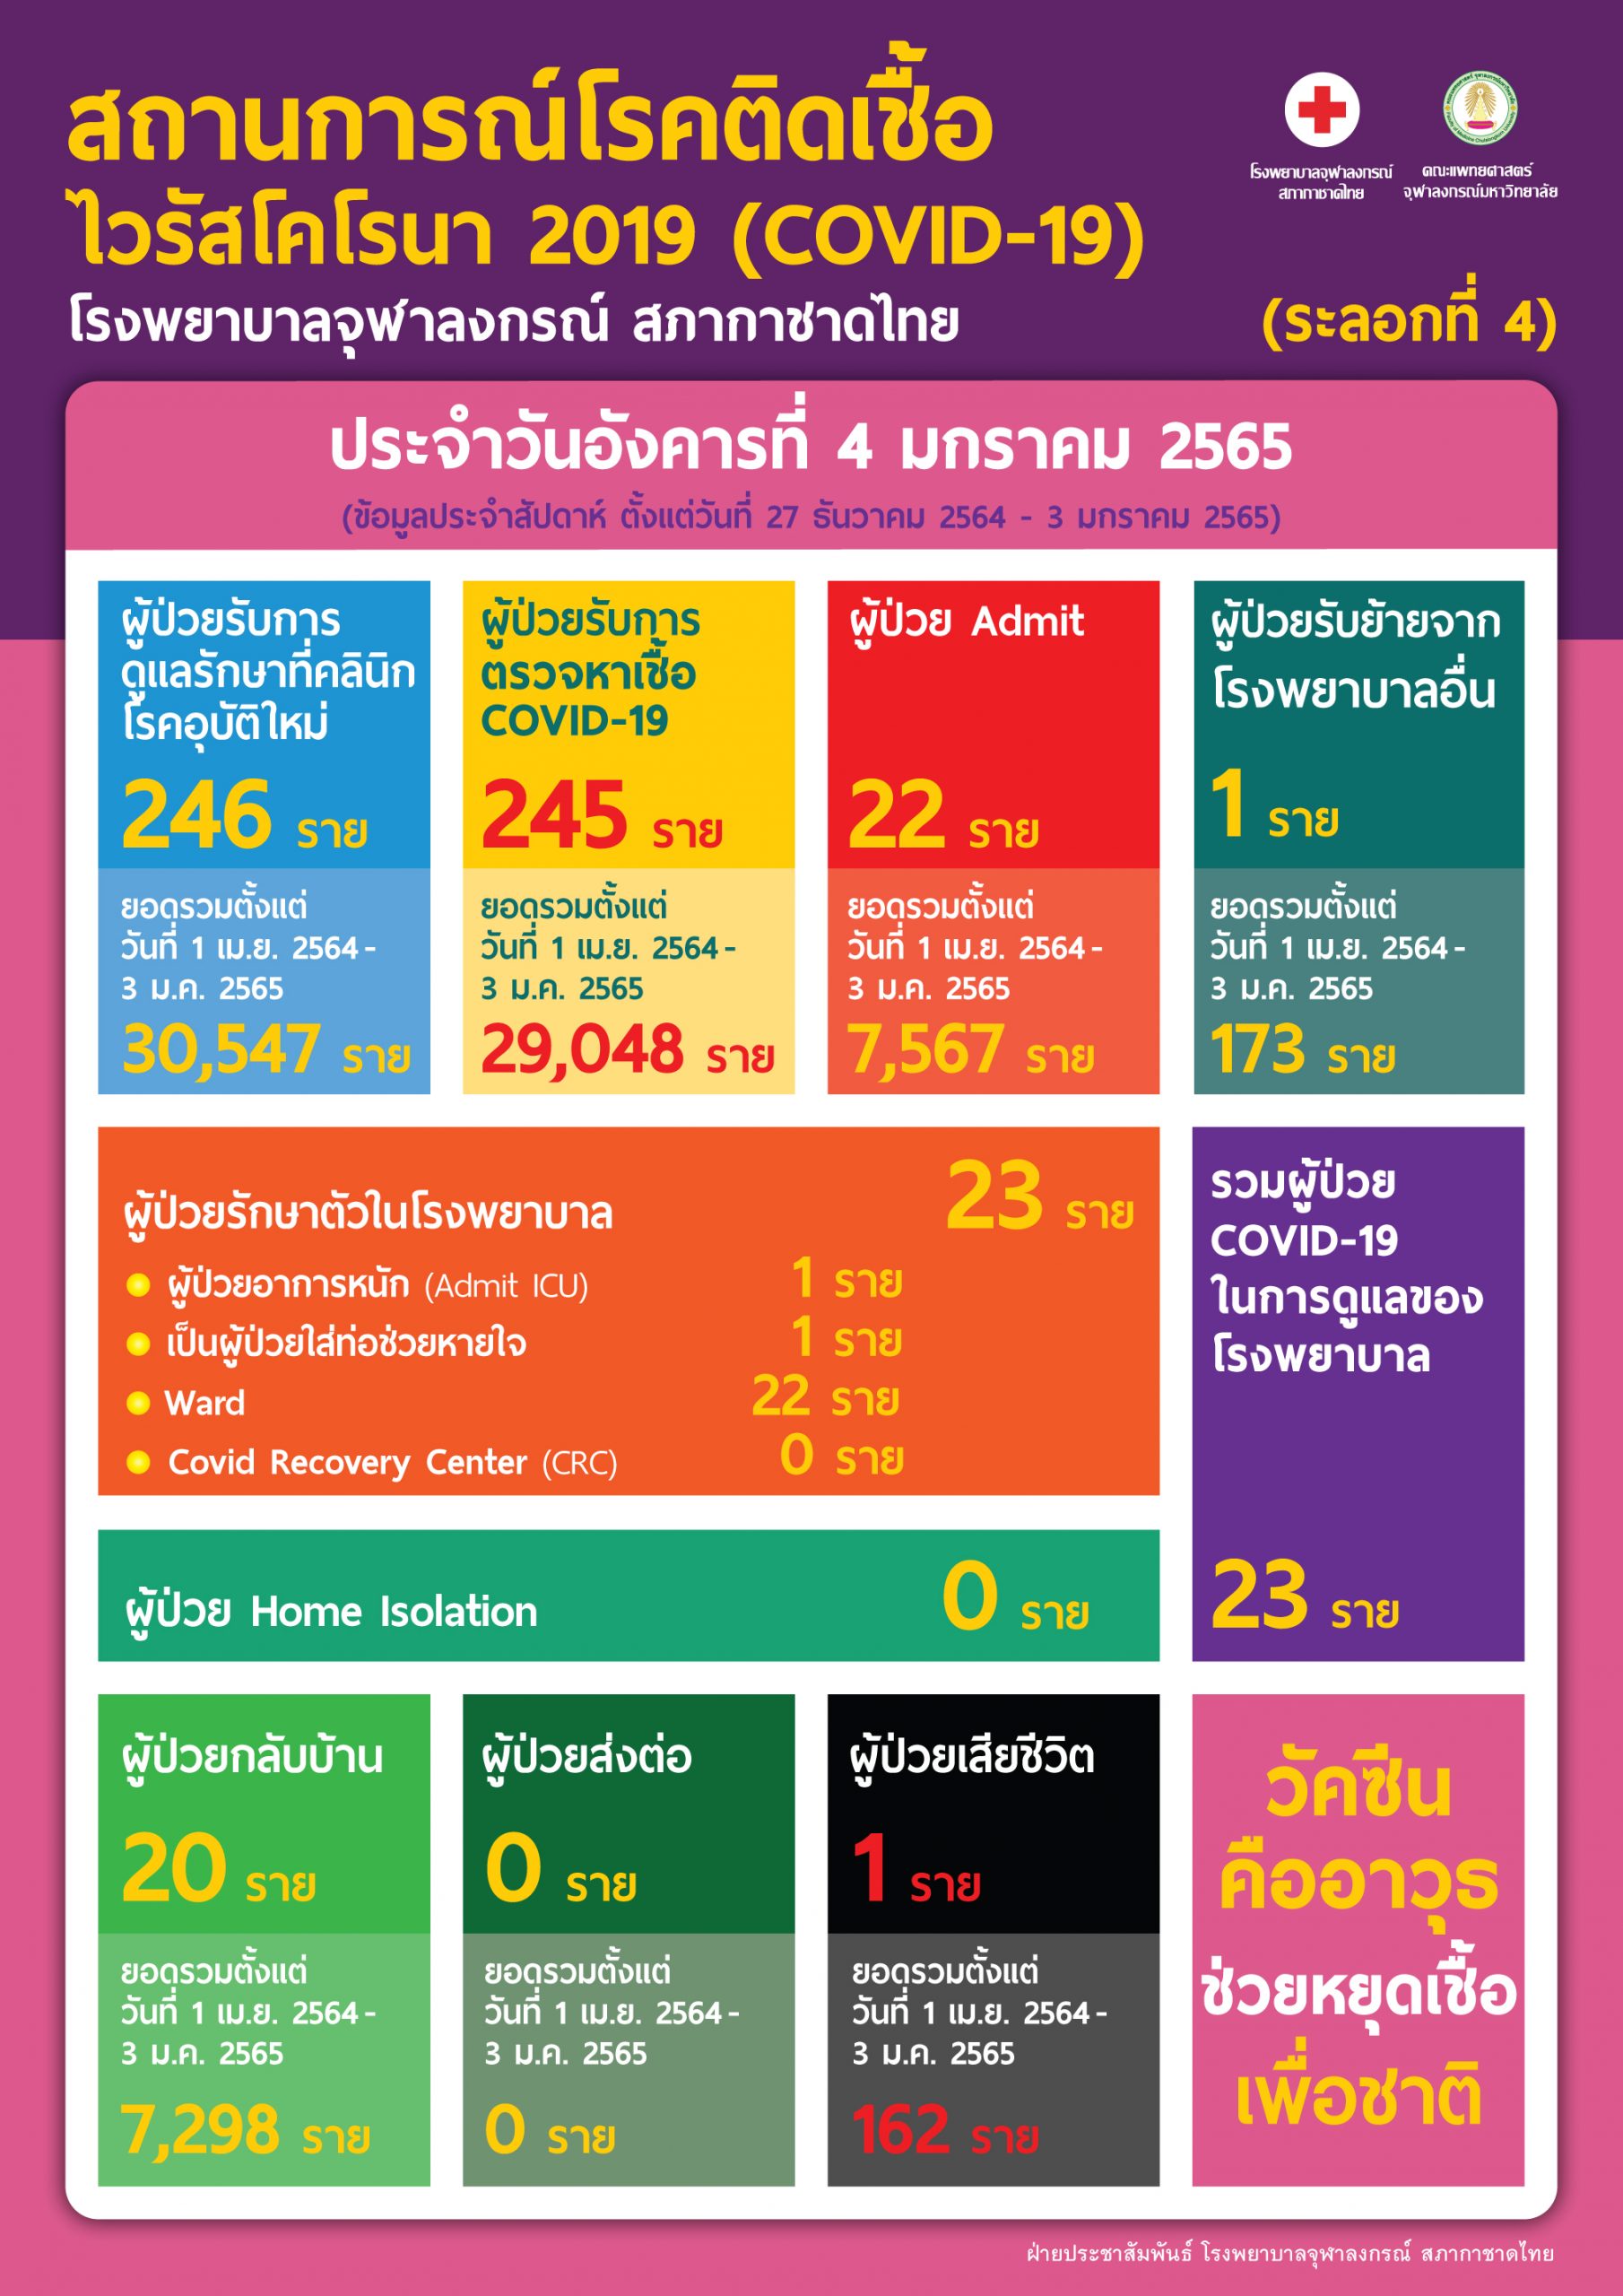 สถานการณ์โรคติดเชื้อไวรัสโคโรนา 2019 (COVID-19) (ระลอกที่ 4) โรงพยาบาลจุฬาลงกรณ์ สภากาชาดไทย ประจำวันอังคารที่ 4 มกราคม 2565